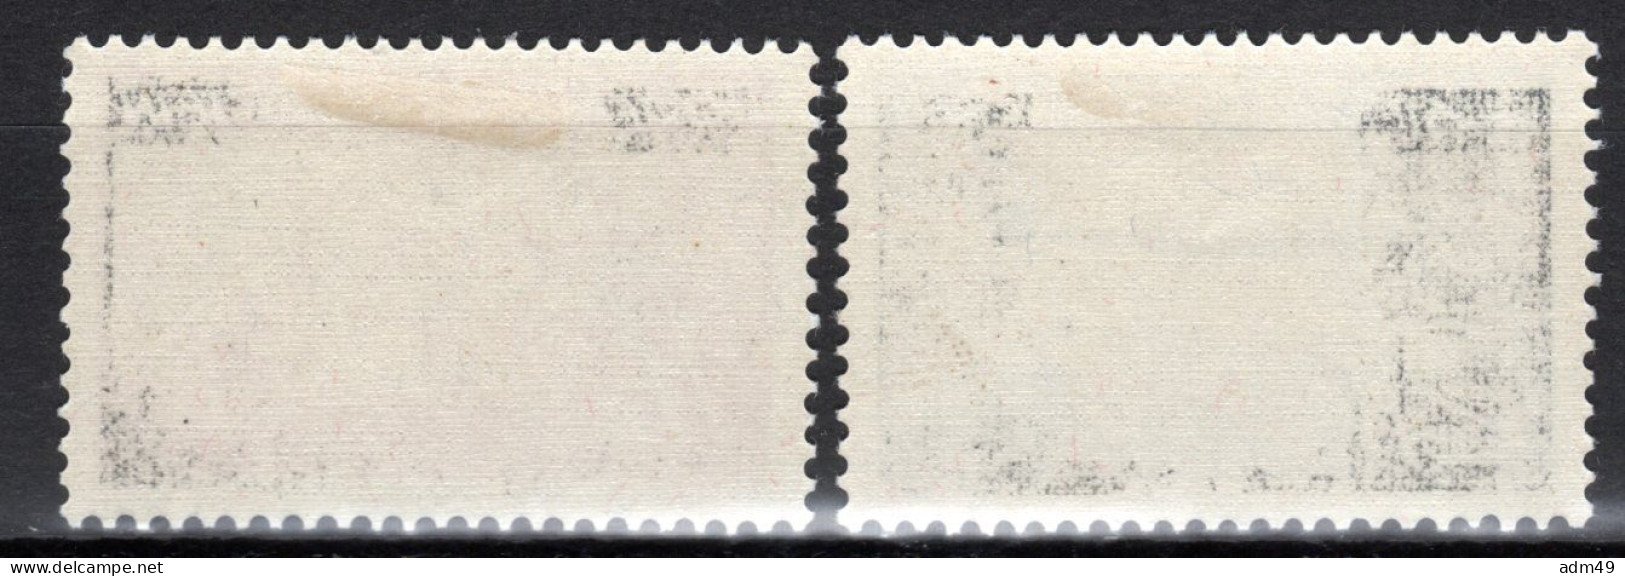 LIECHTENSTEIN, Flugpost 1936 Zeppelin über Liechtenstein, Ungebraucht * - Luchtpostzegels